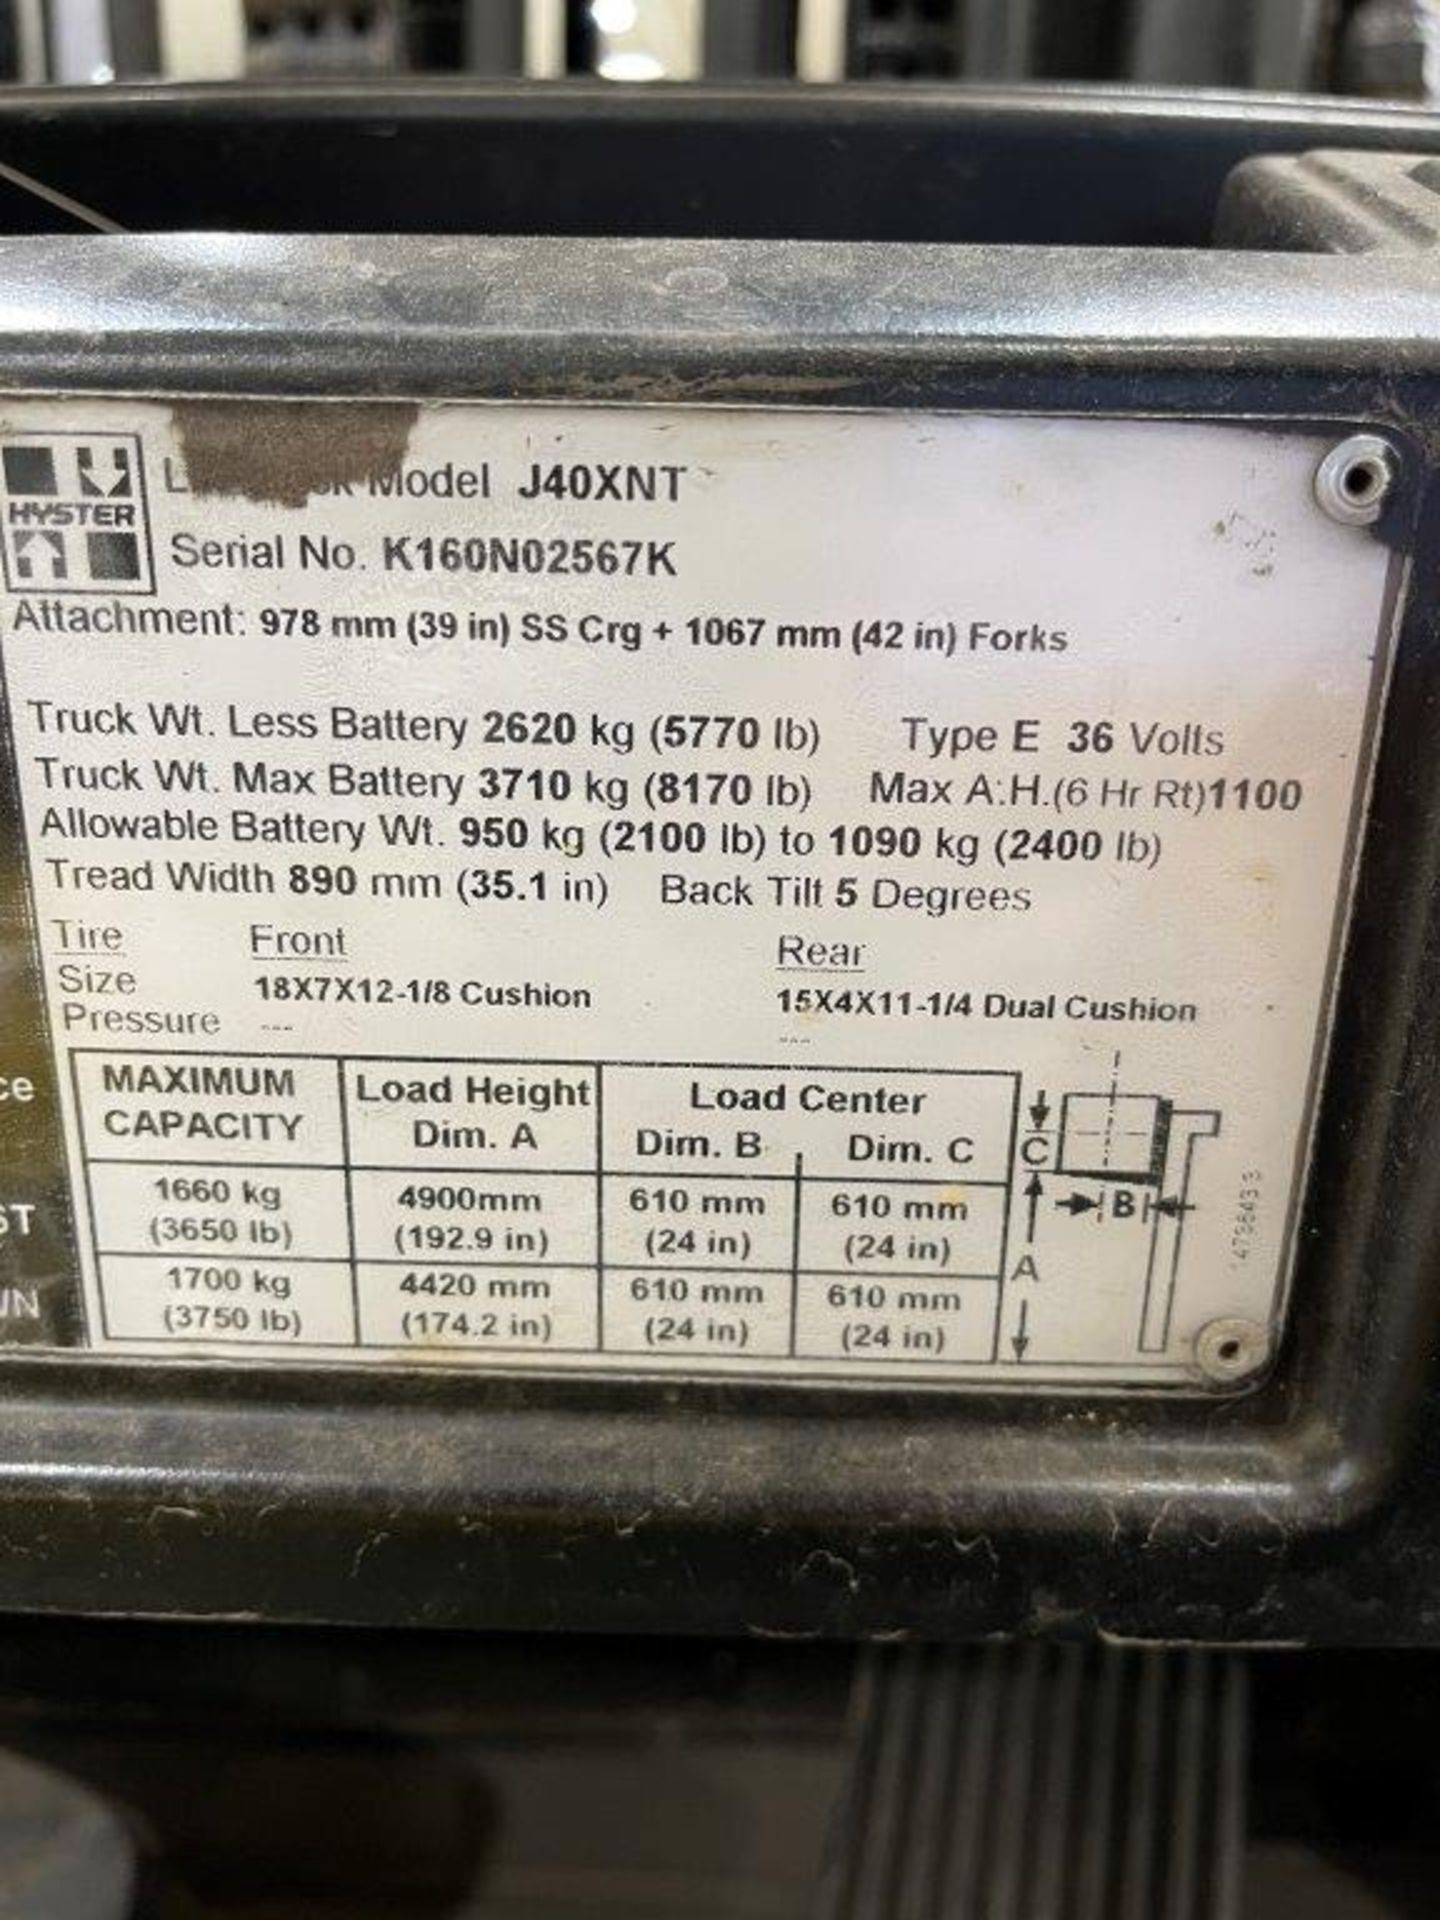 Hyster J40XNT 3,750-Lb LPG Forklift Truck - Image 6 of 6